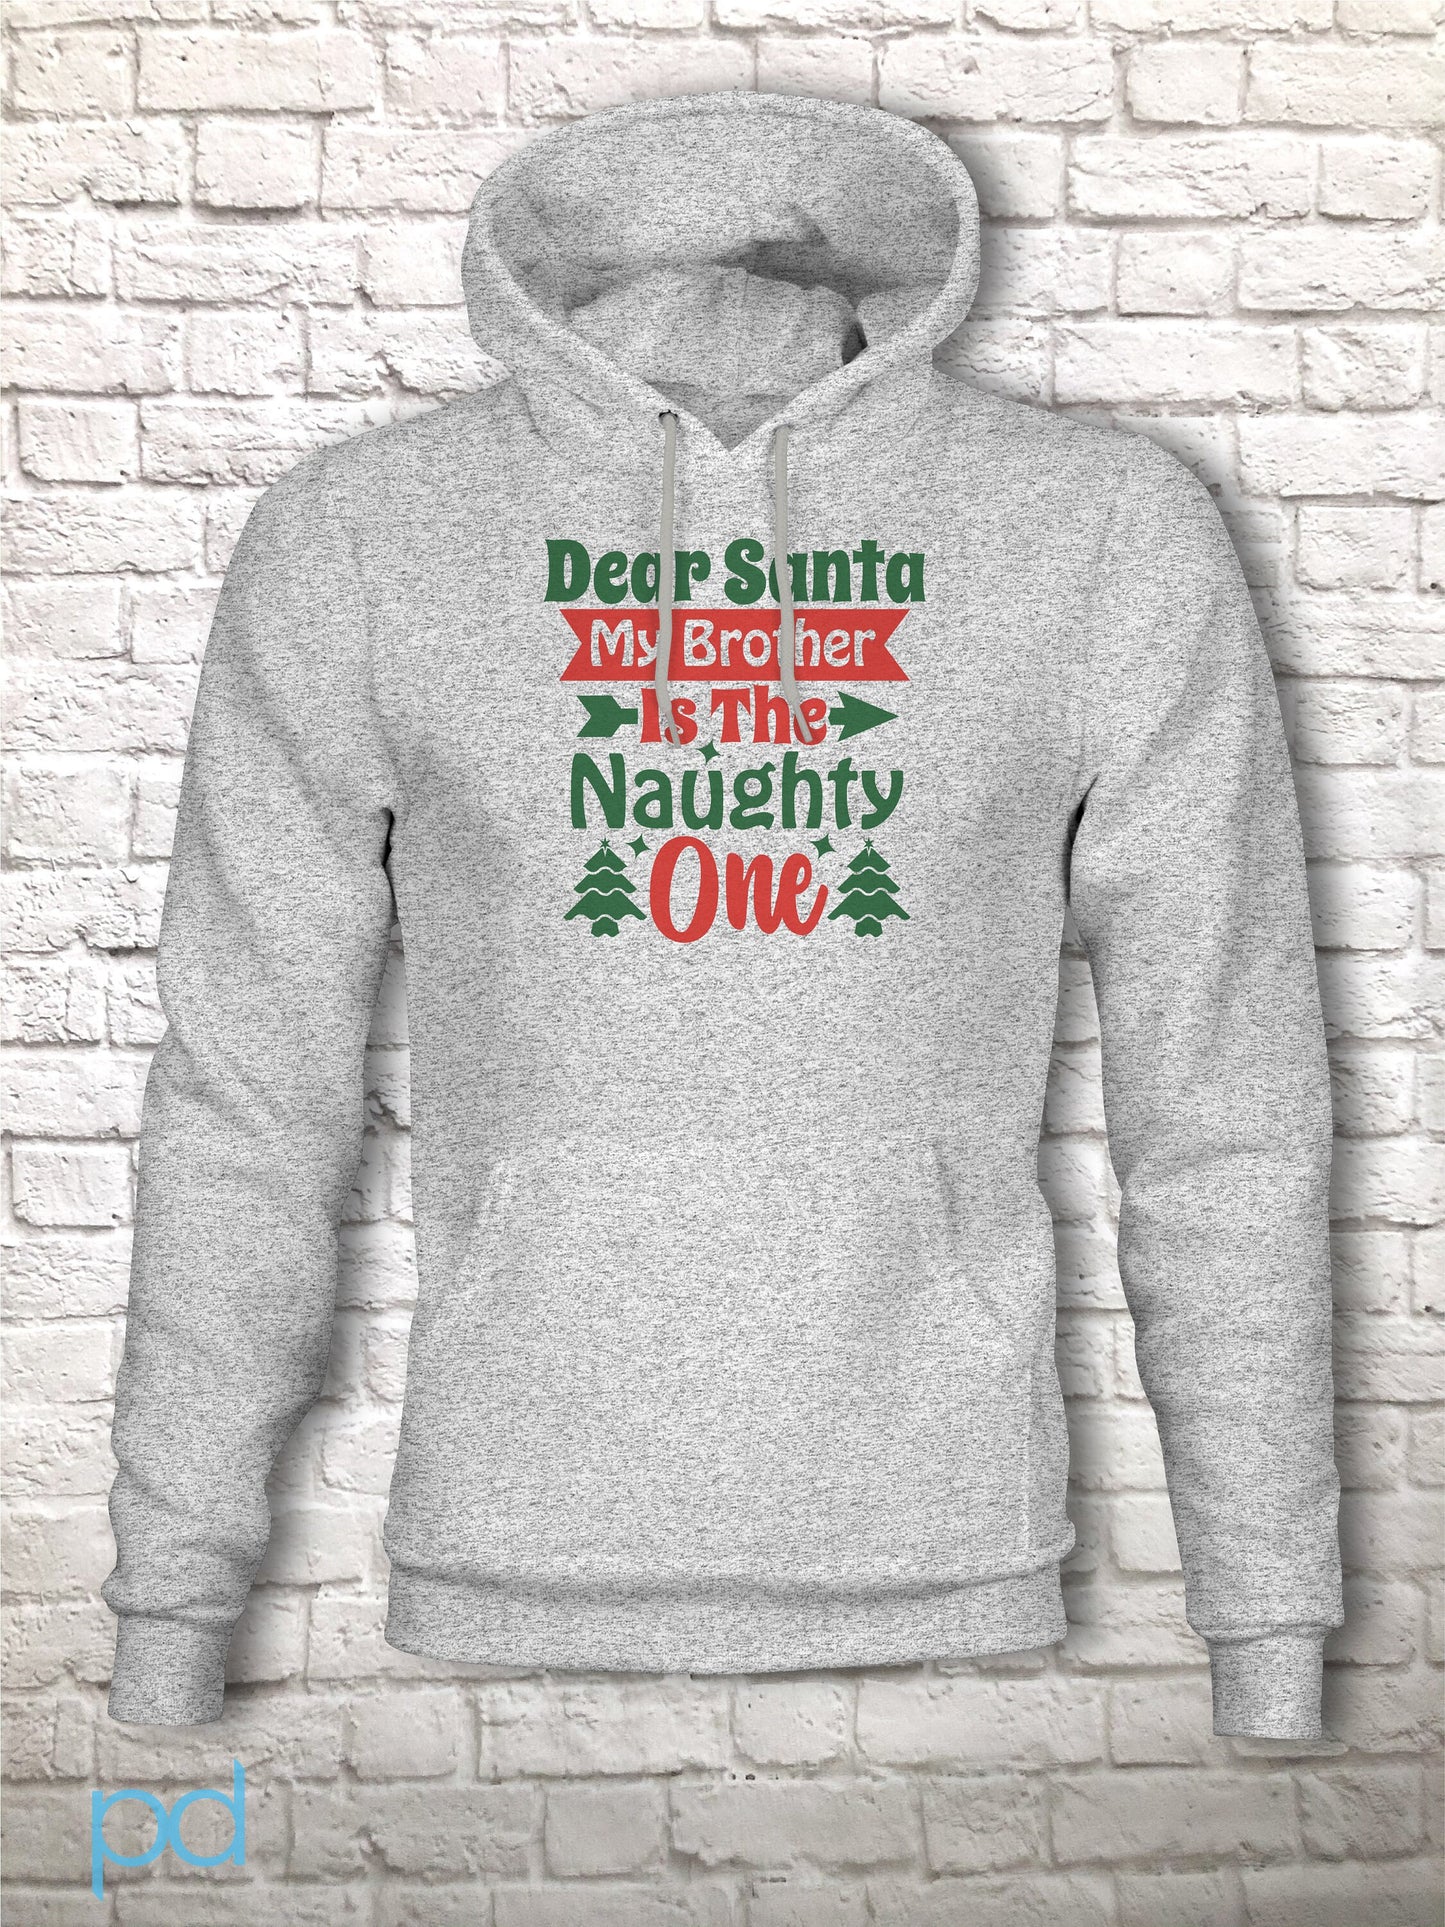 Funny Christmas T Shirt, Dear Santa Letter, Naughty or Nice list